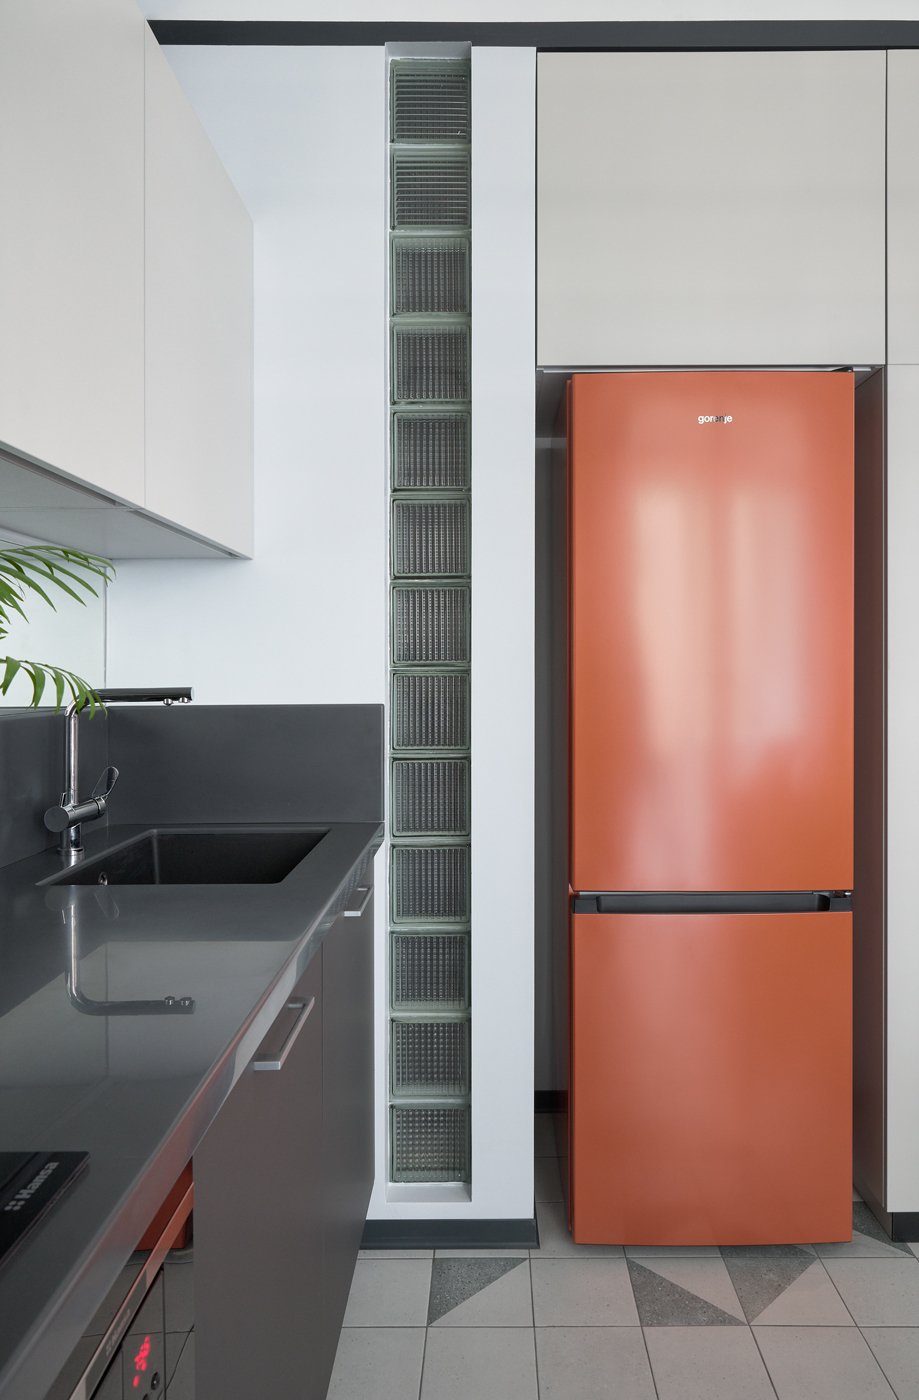 Холодильник радует своим ярким цветом, он встроен в нишу, образованную стеной и шкафом.